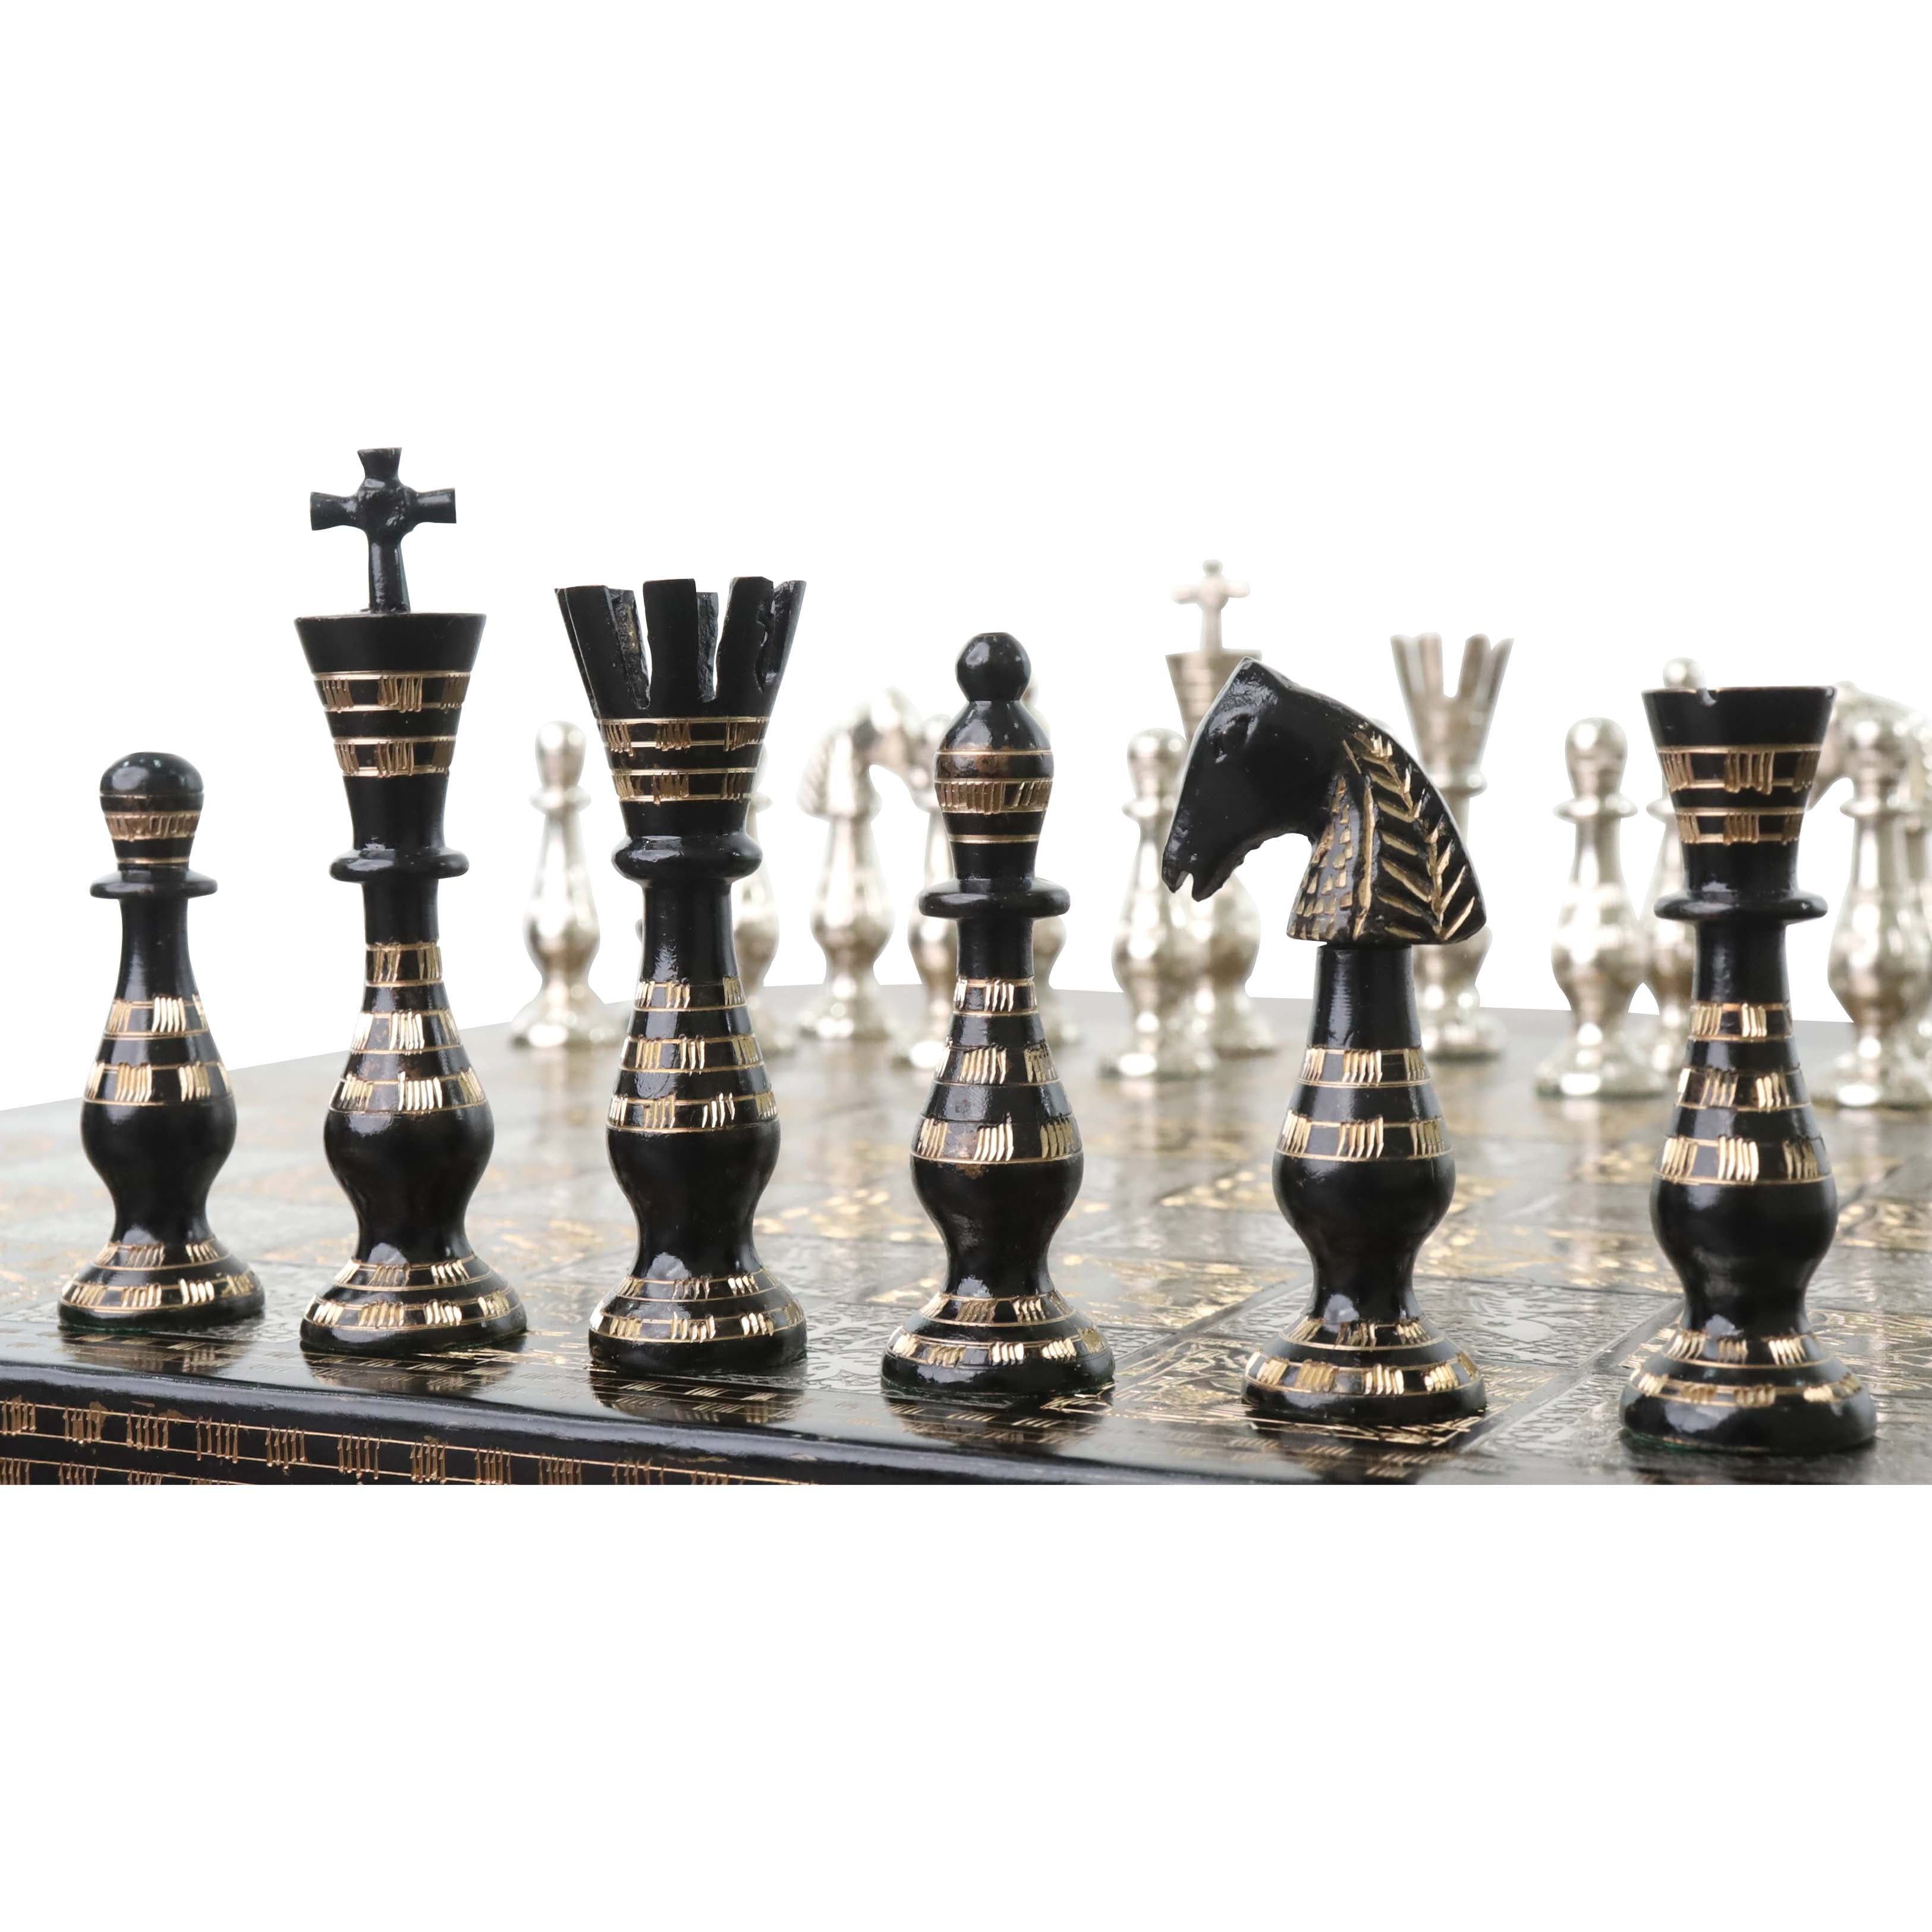 fancy beautiful chess set